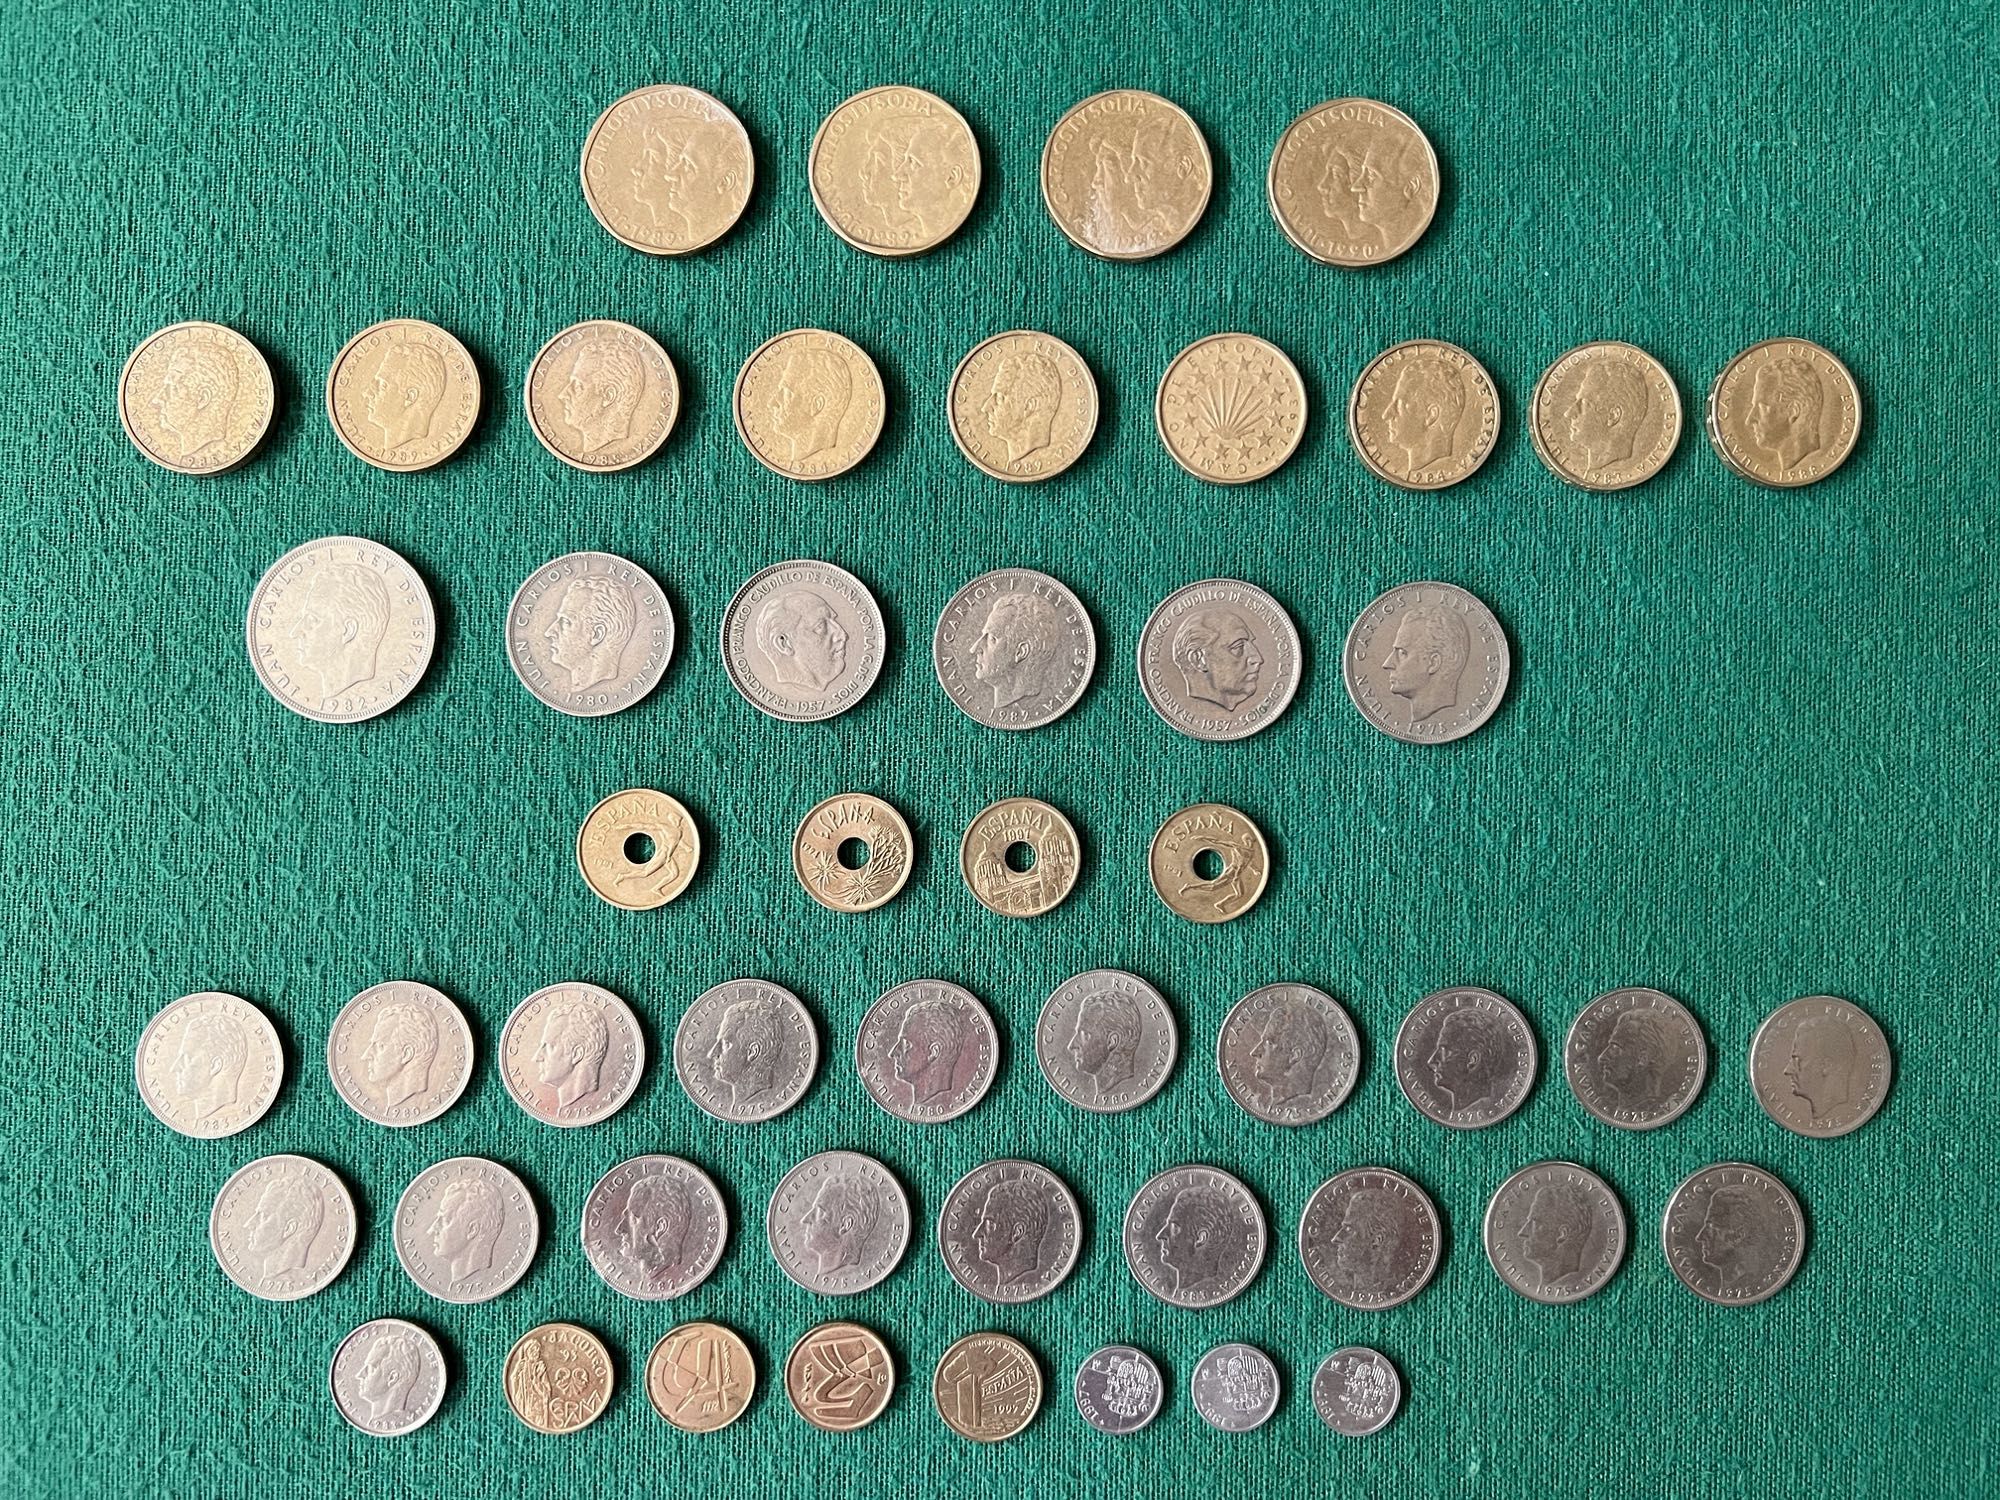 Coleção de moedas espanholas - Pesetas